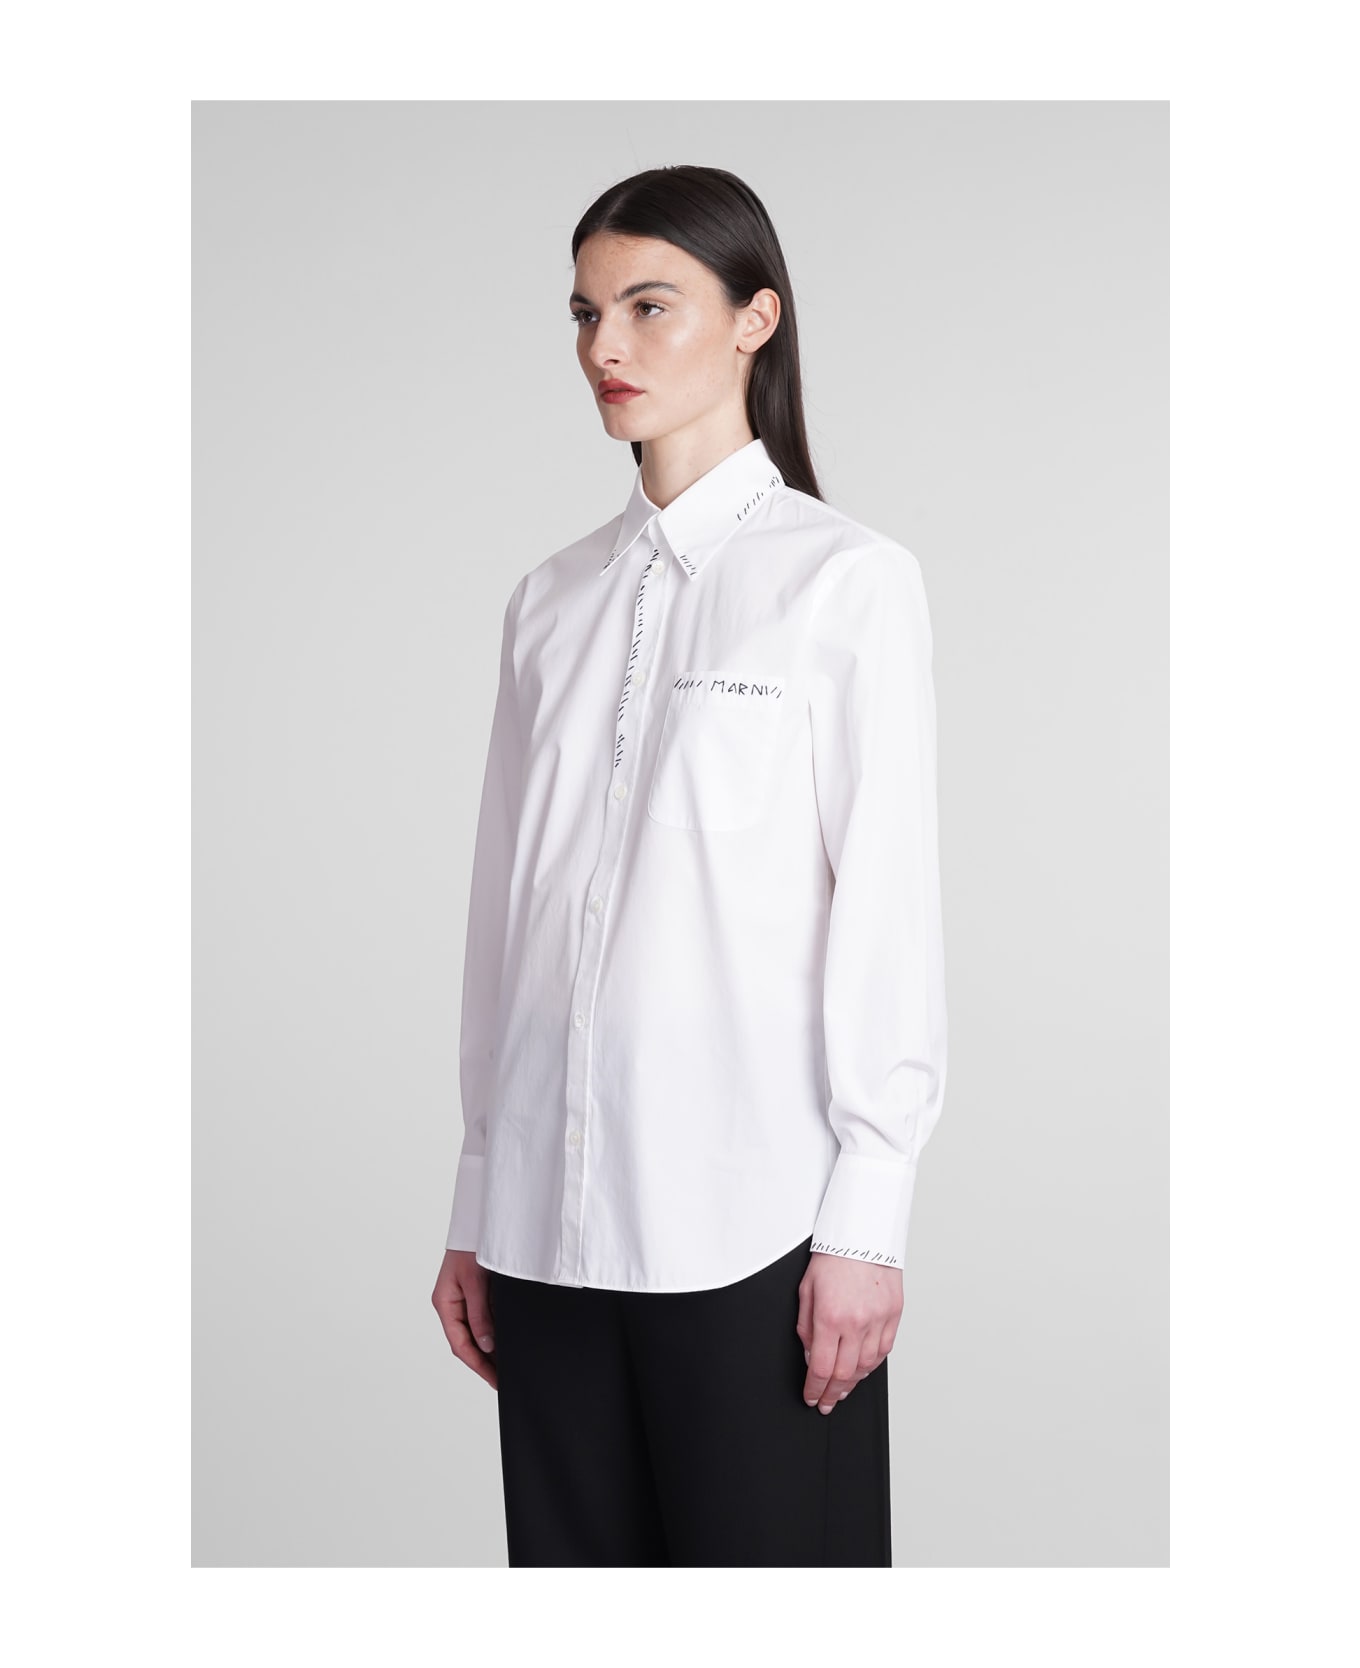 Marni Shirt In White Cotton - white シャツ